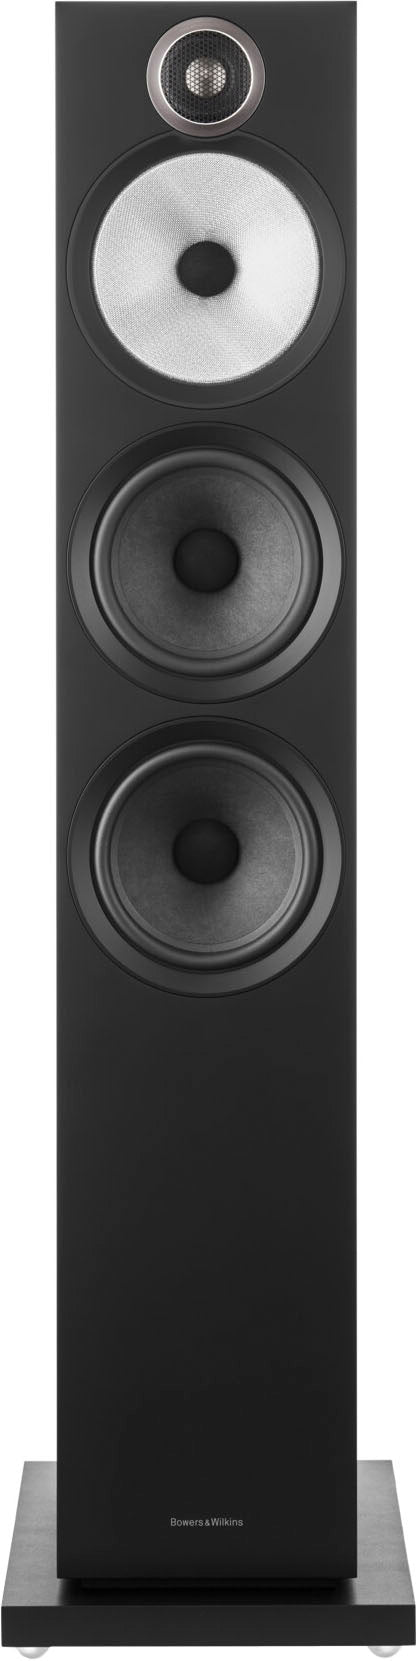 Bowers & Wilkins - 600 S3 Series 3-Way Floorstanding Loudspeaker (Each) - Black_2